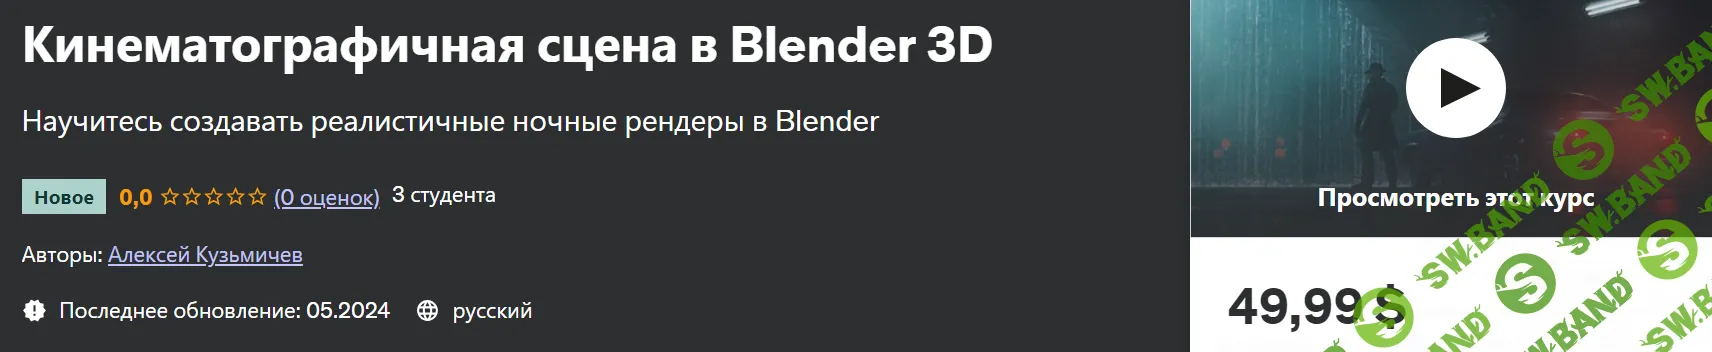 Кинематографичная сцена в Blender 3D [Алексей Кузьмичев]